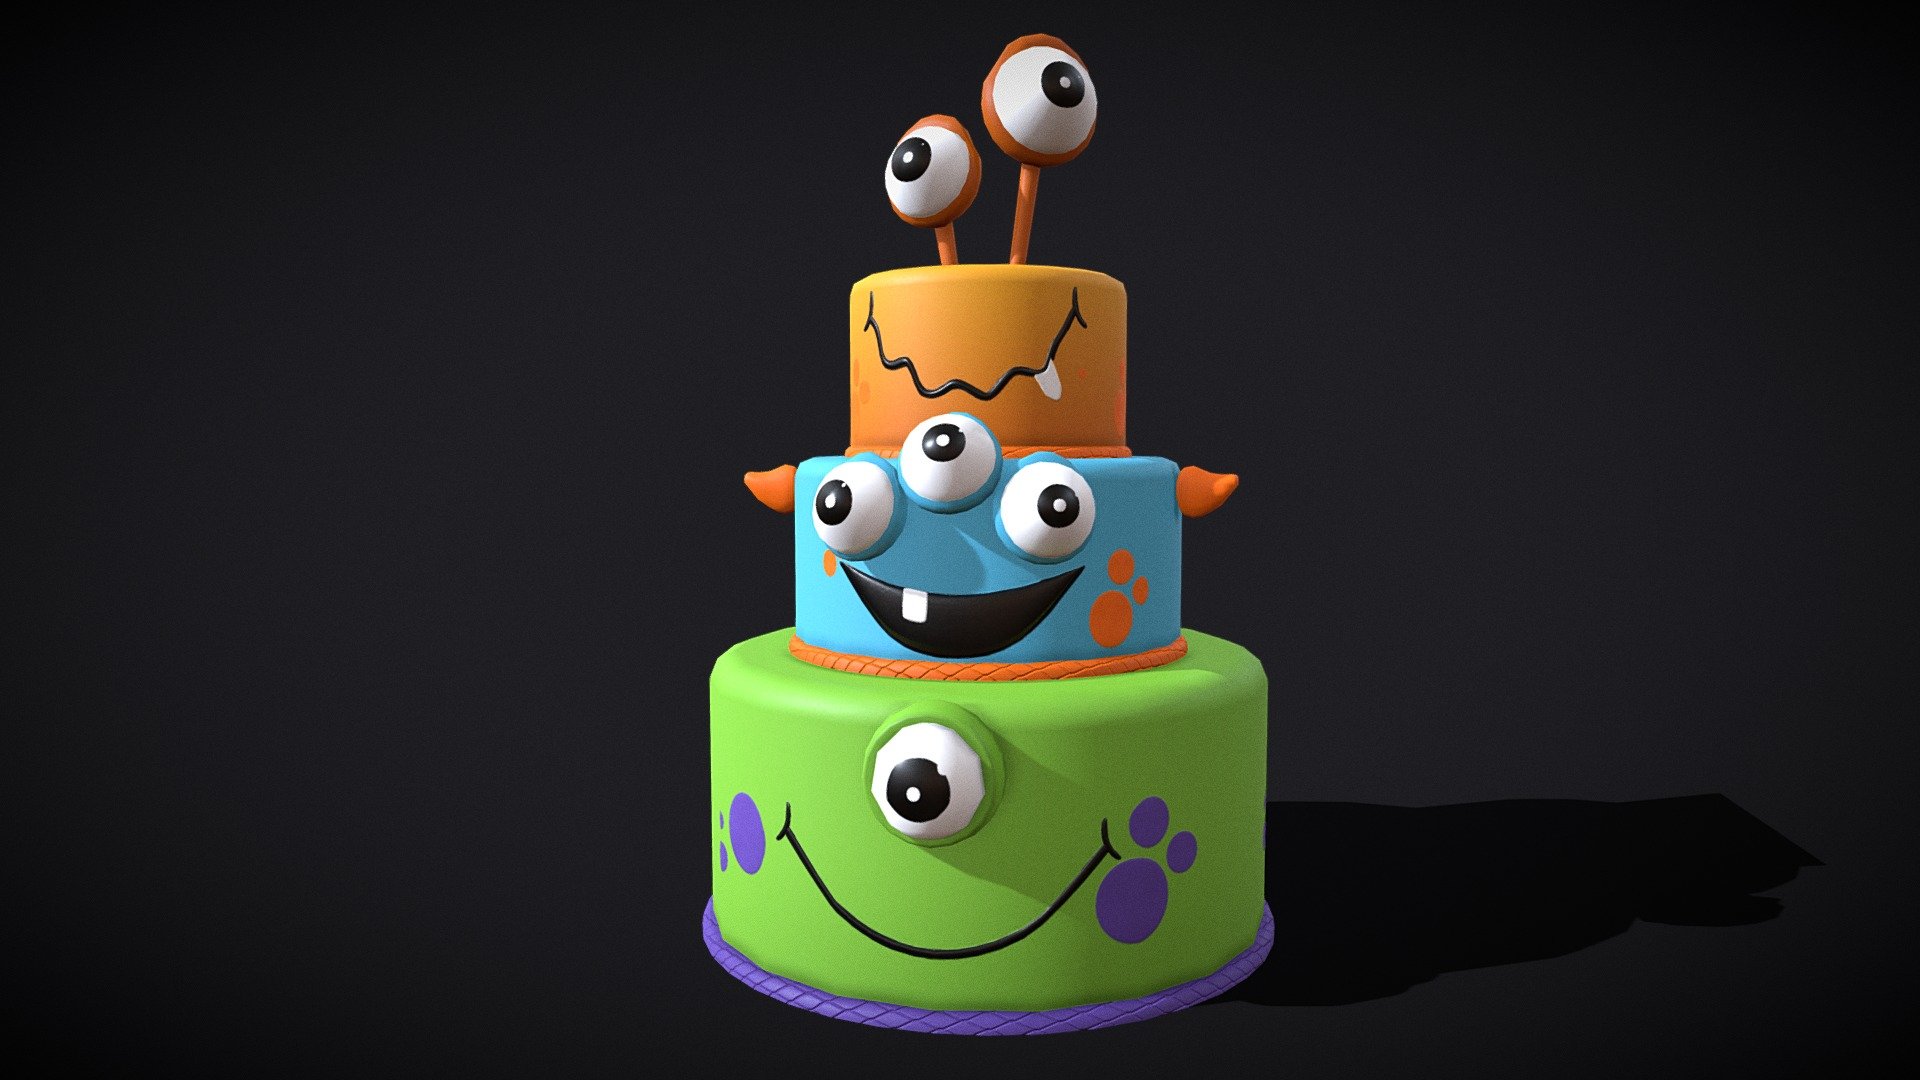 Monster Cake side quest completed ✓ #totk #zelda #botw #cake #baker | TikTok